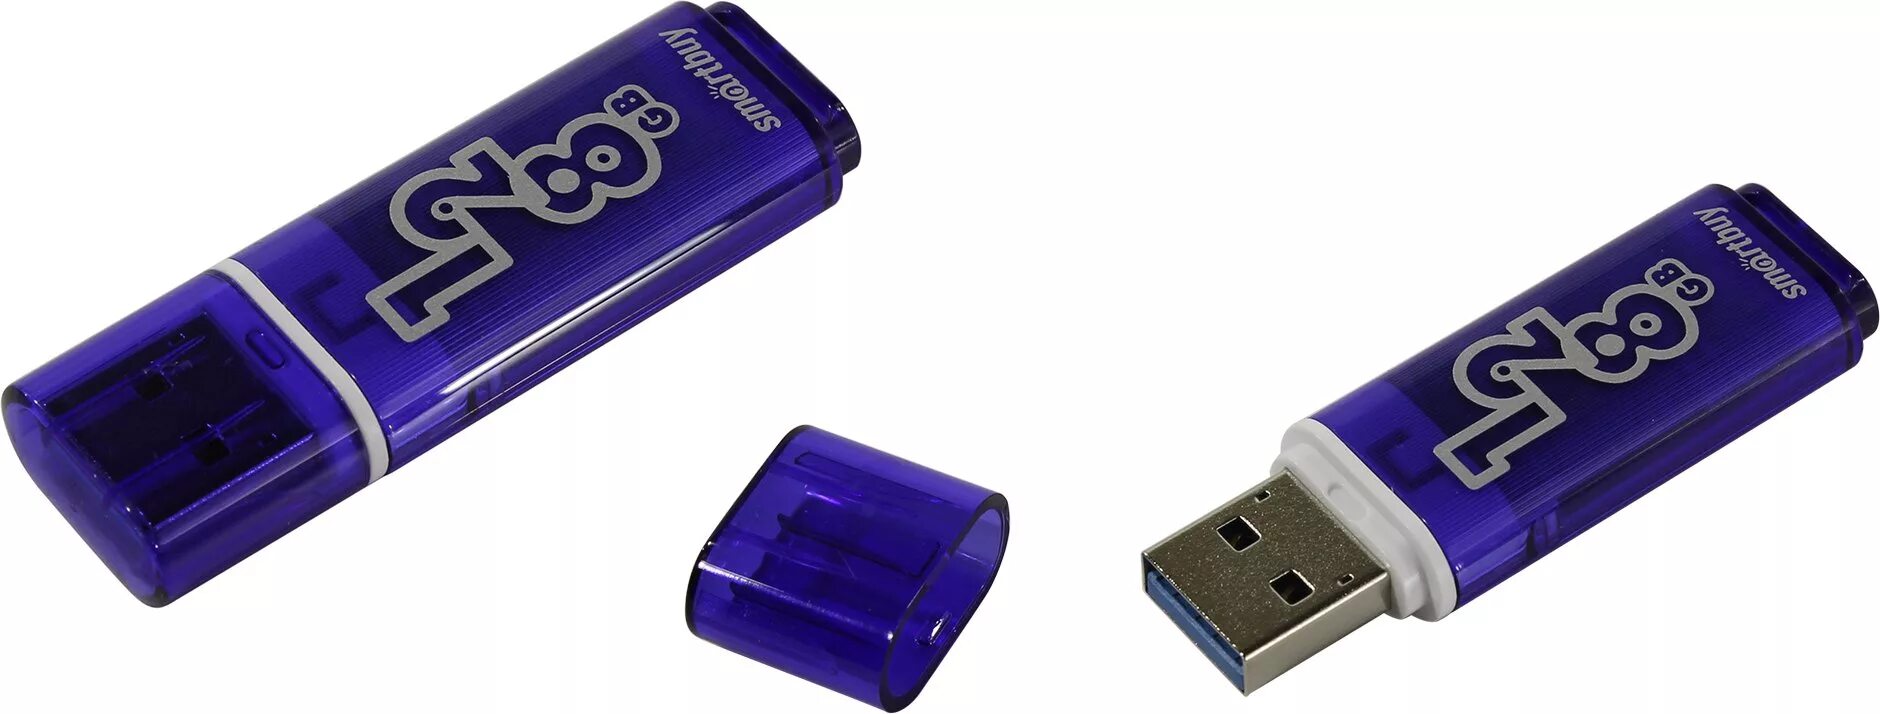 Флешки 128 гб 3.0. Флешка SMARTBUY 128gb. SMARTBUY 128gb USB 3.0. Флешка SMARTBUY Glossy USB 3.0. USB накопитель SMARTBUY Glossy 128gb USB3.0, темно-синий.